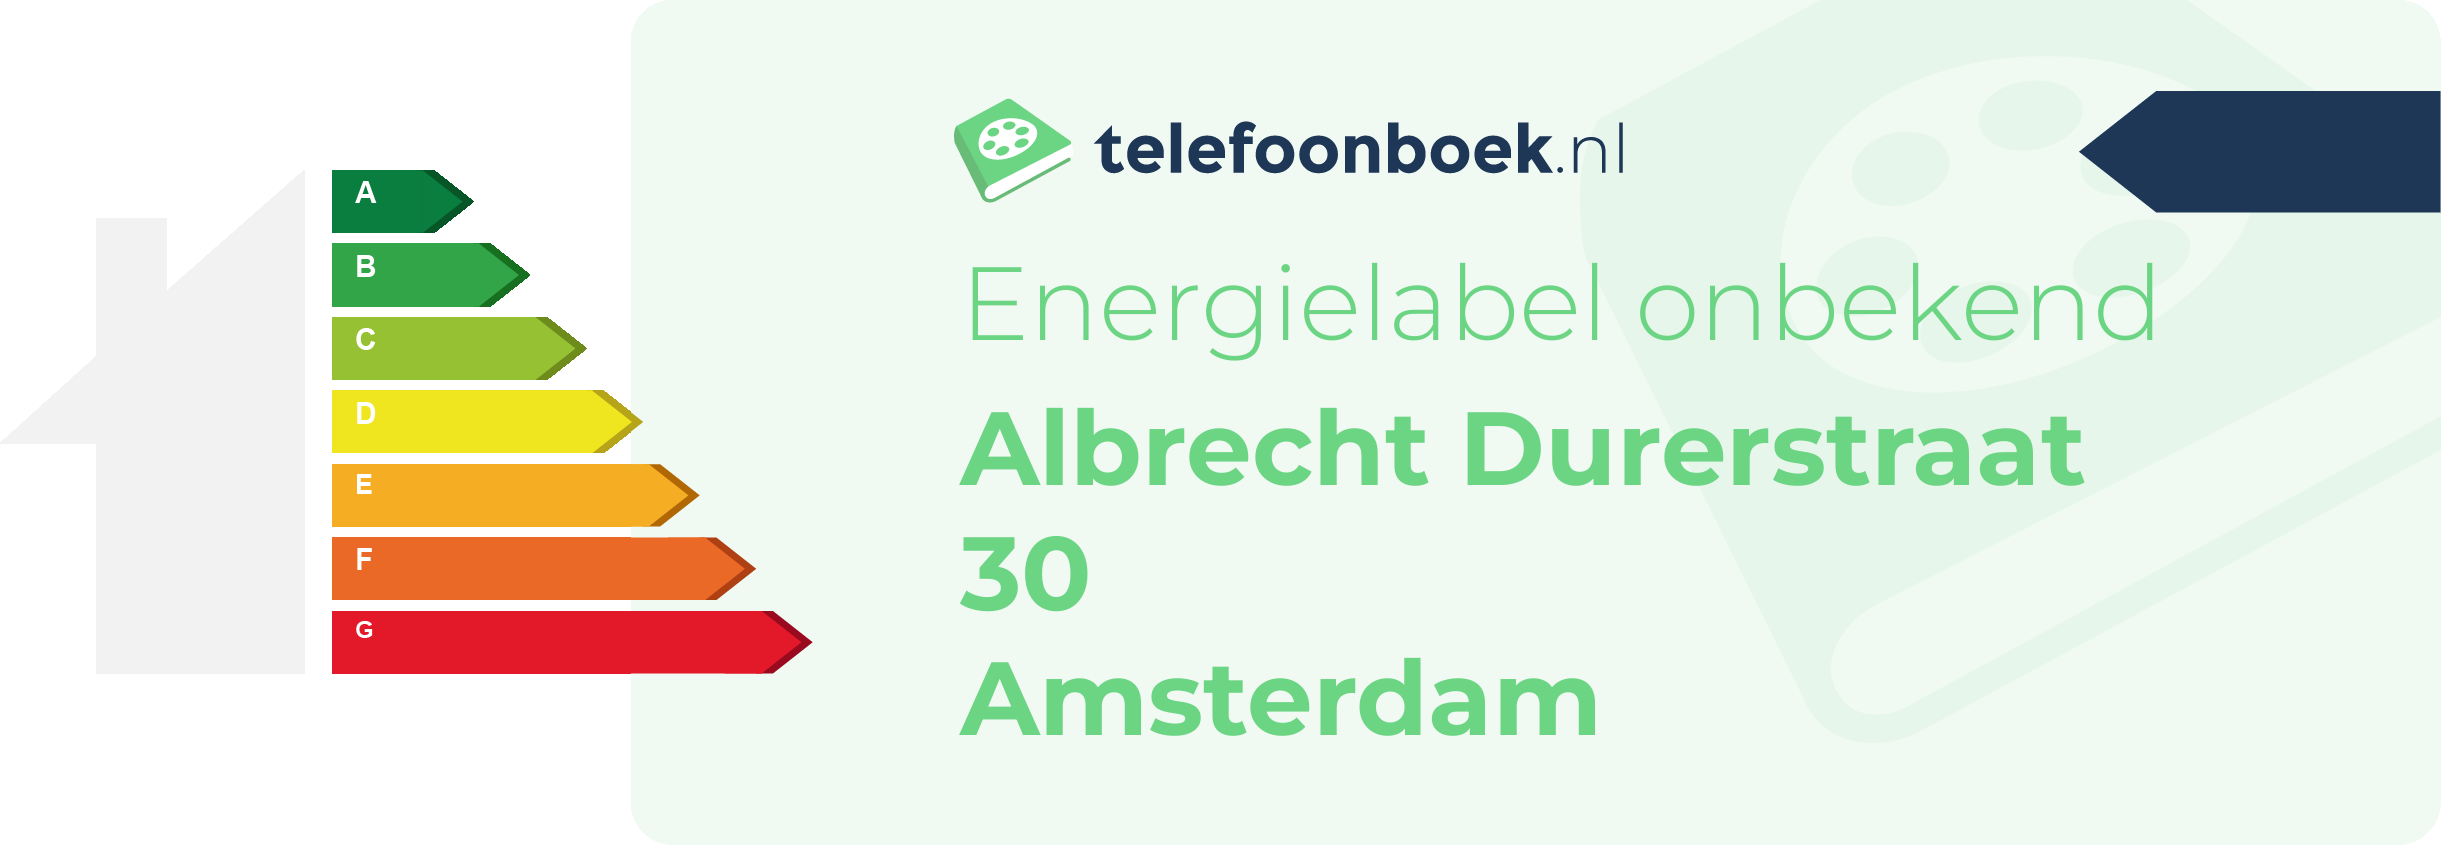 Energielabel Albrecht Durerstraat 30 Amsterdam